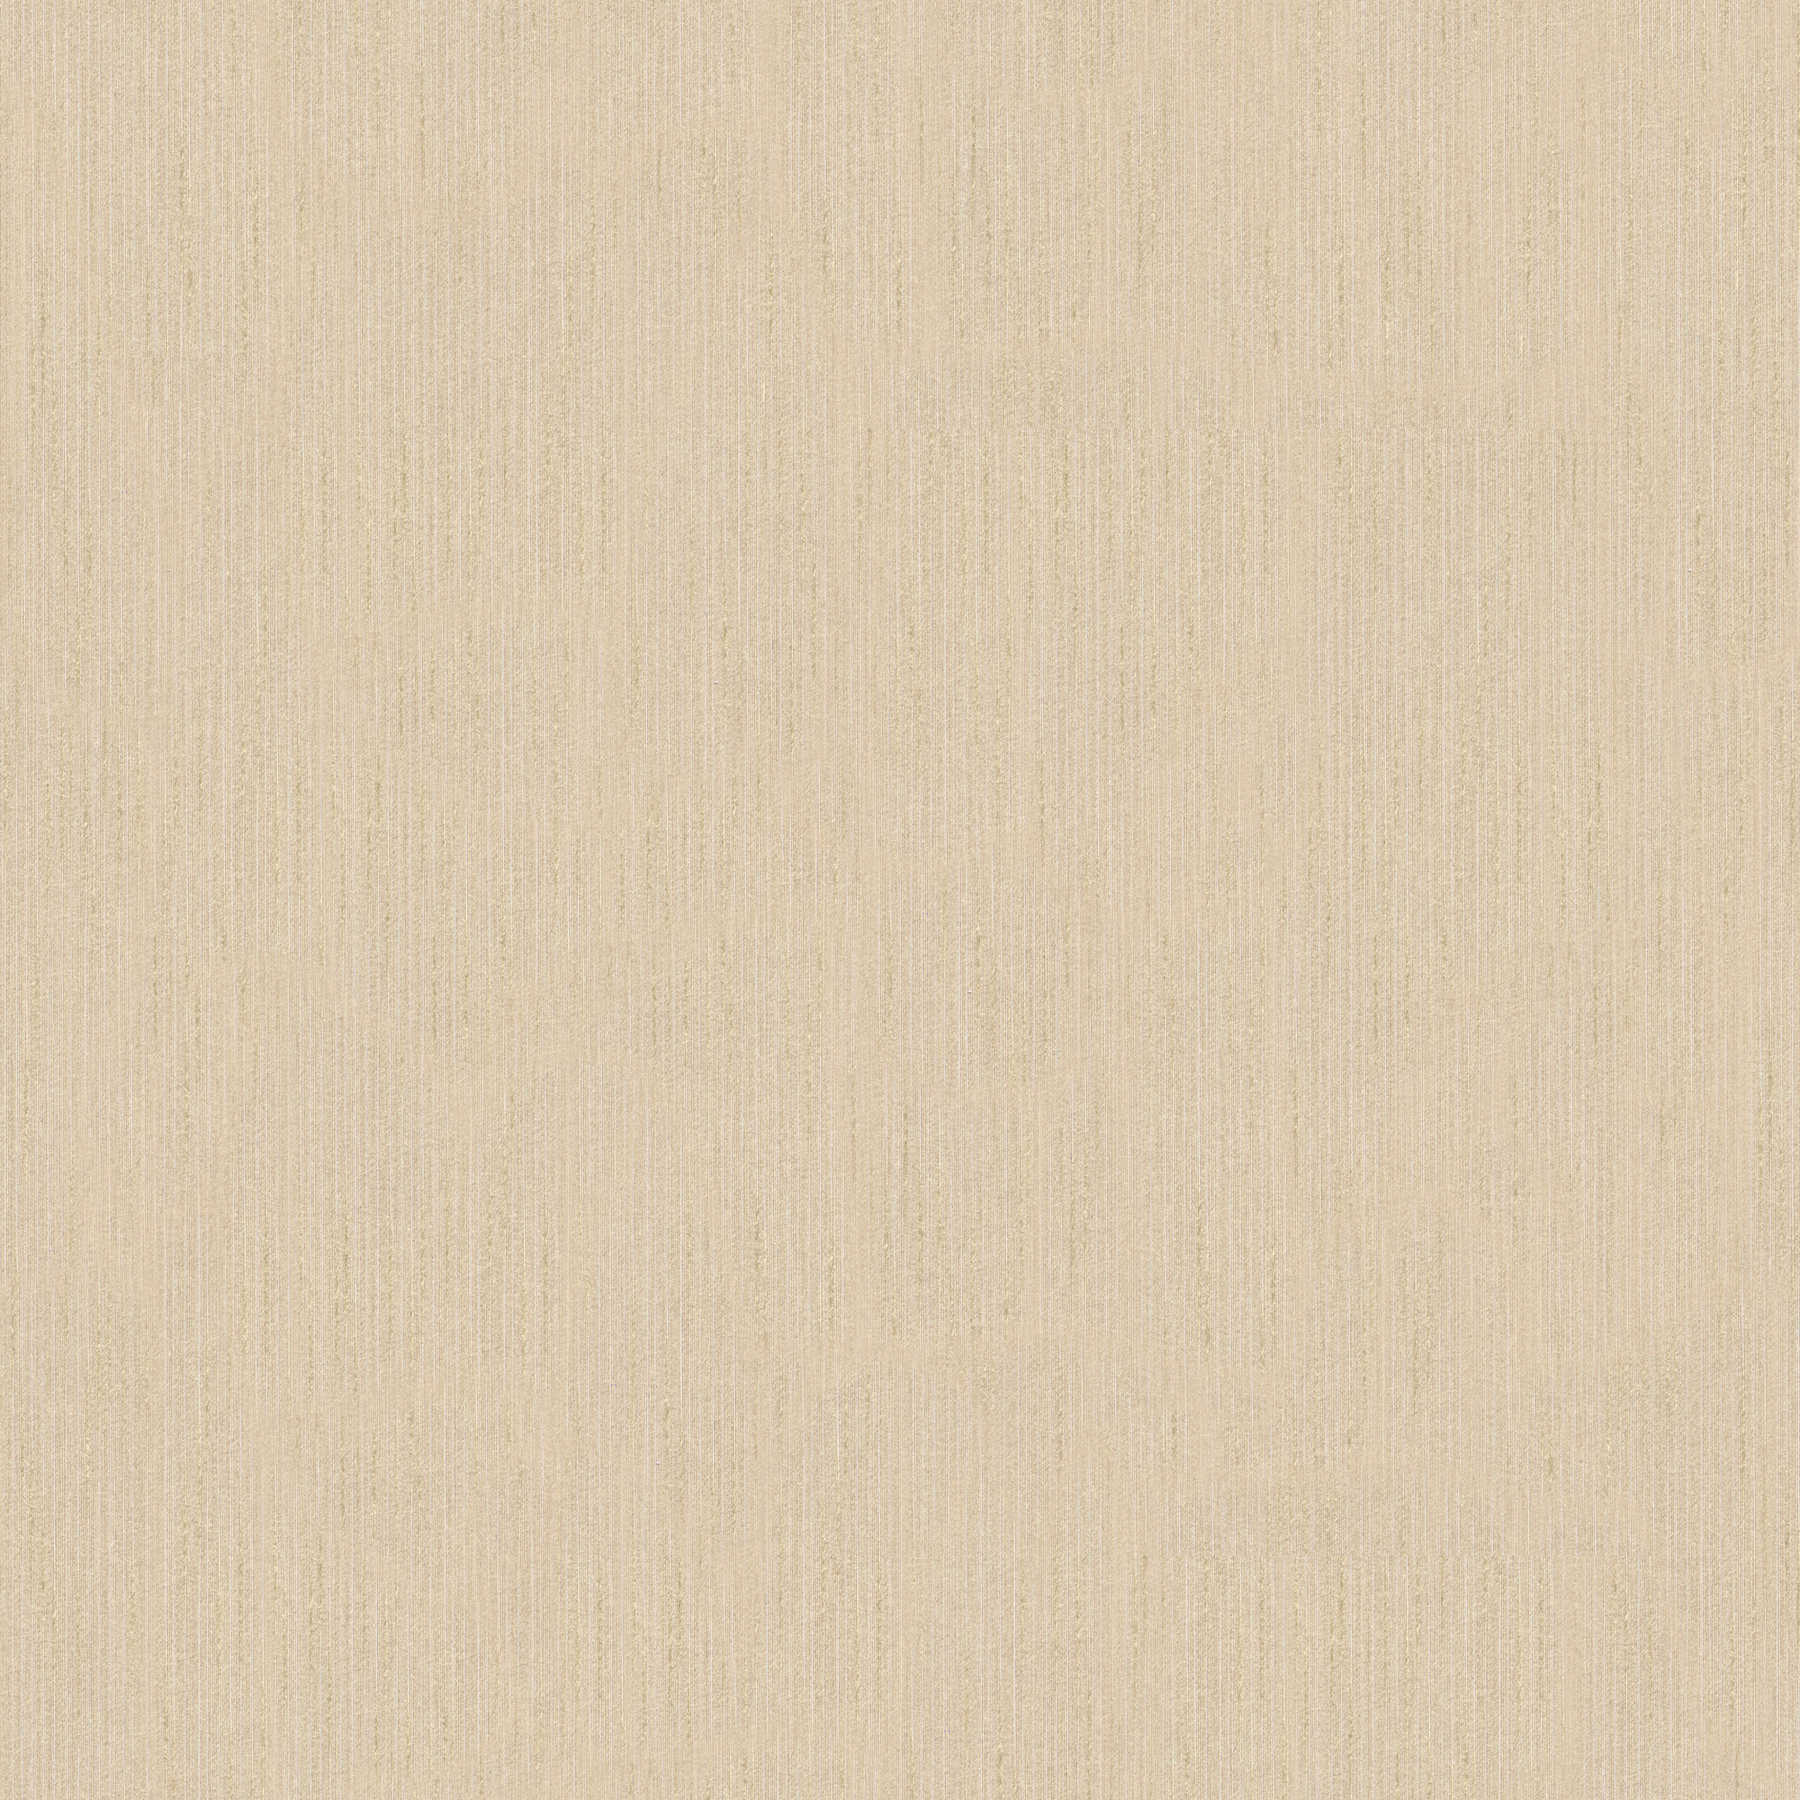 Papier peint beige sable avec motifs structurés
